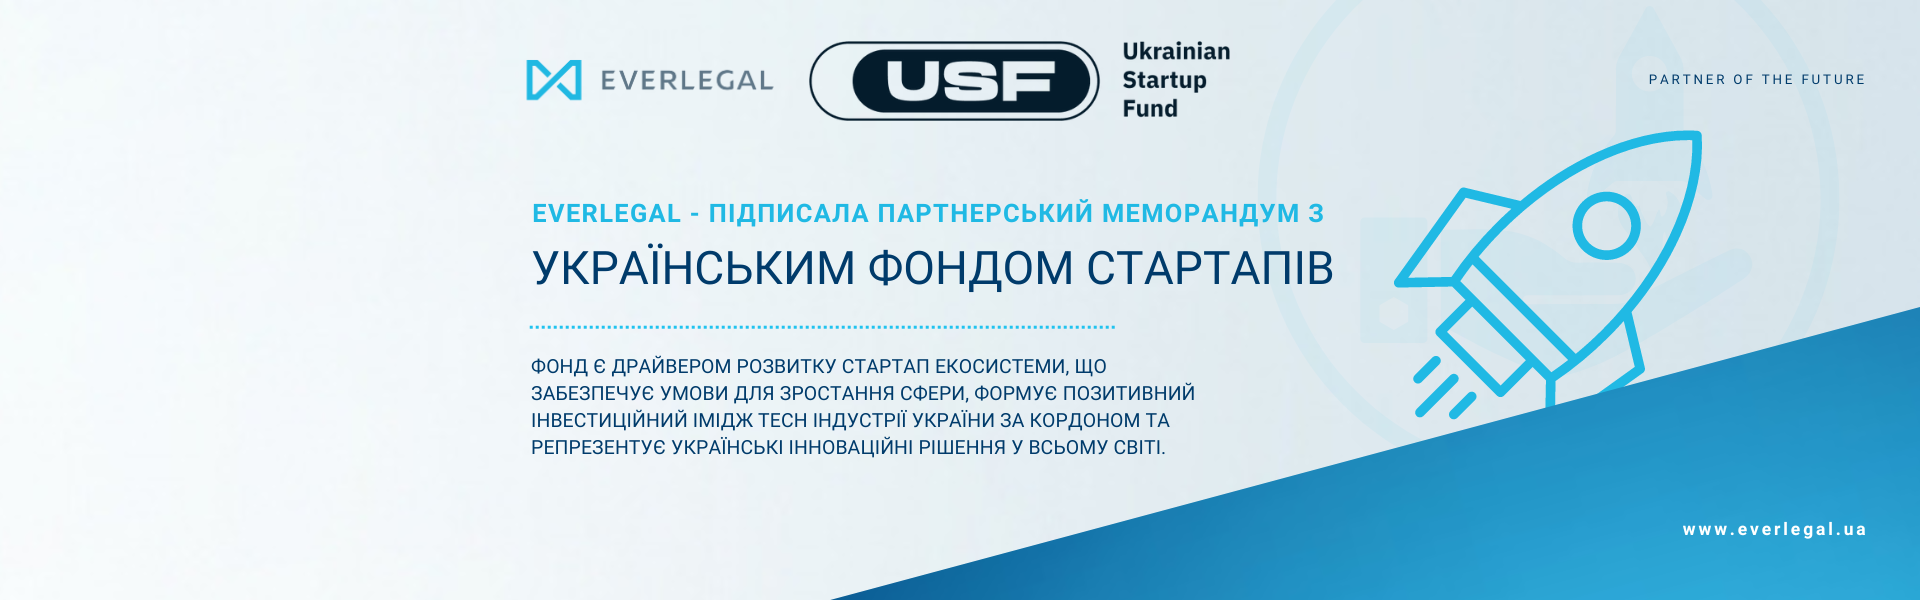 EVERLEGAL підписала партнерський Меморандум з Українським фондом стартапів